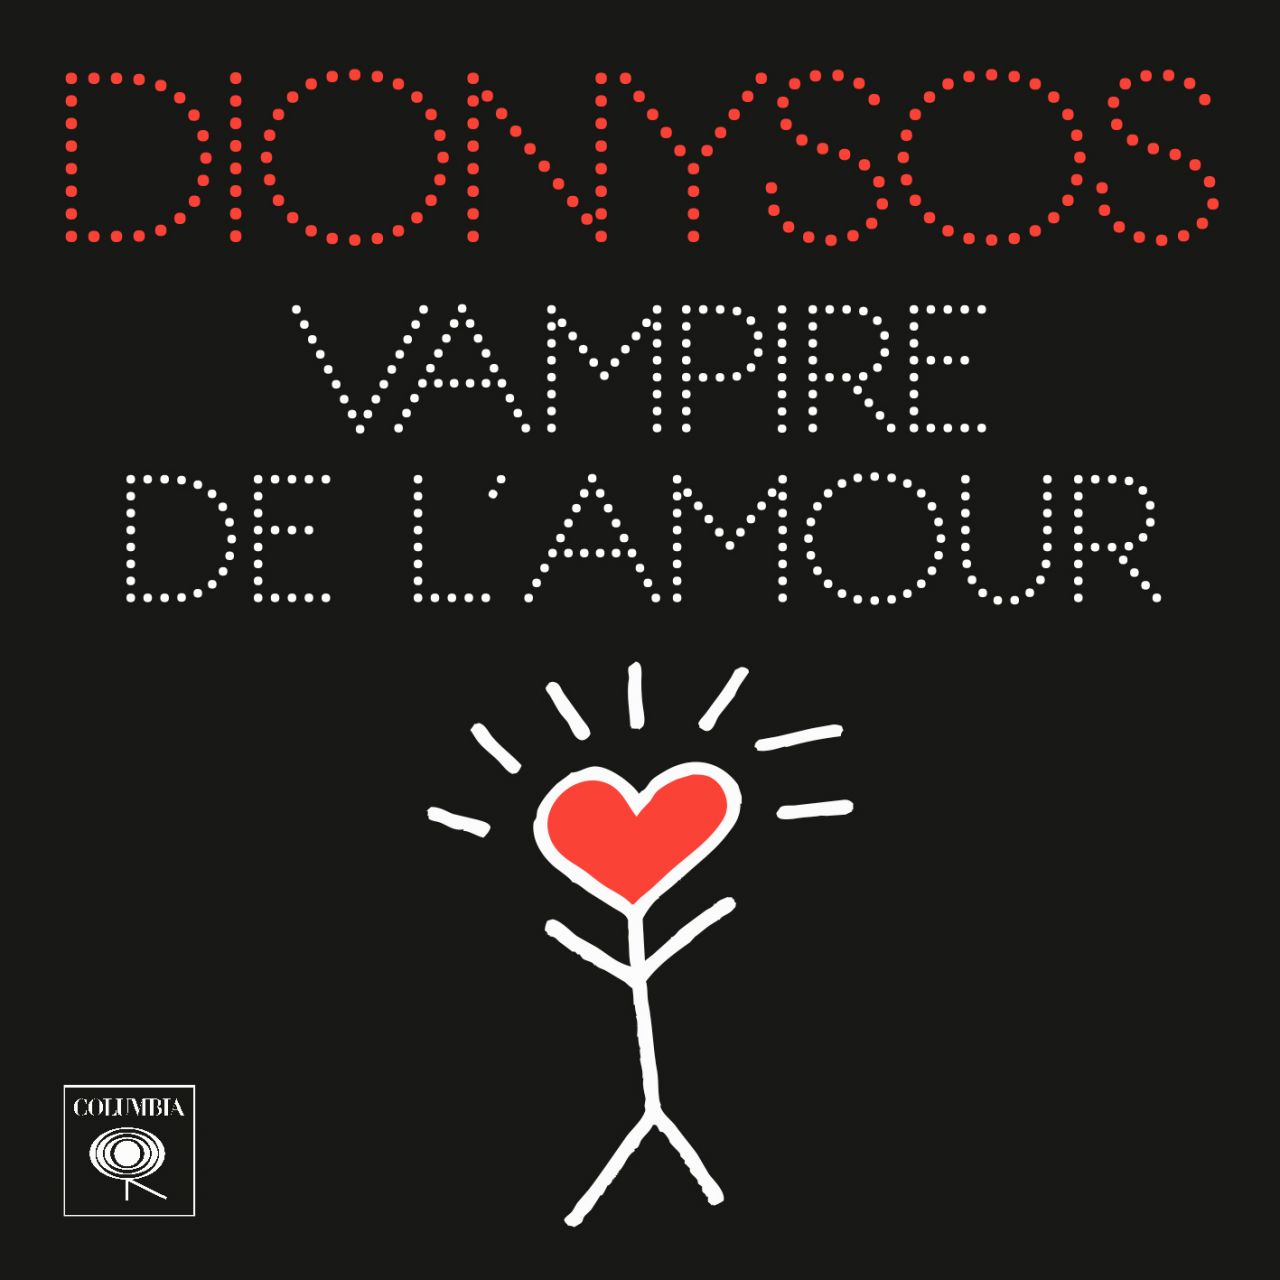 5209779 dionysos vampir b2543105351 original Dionysos et le vampire de l'Amour